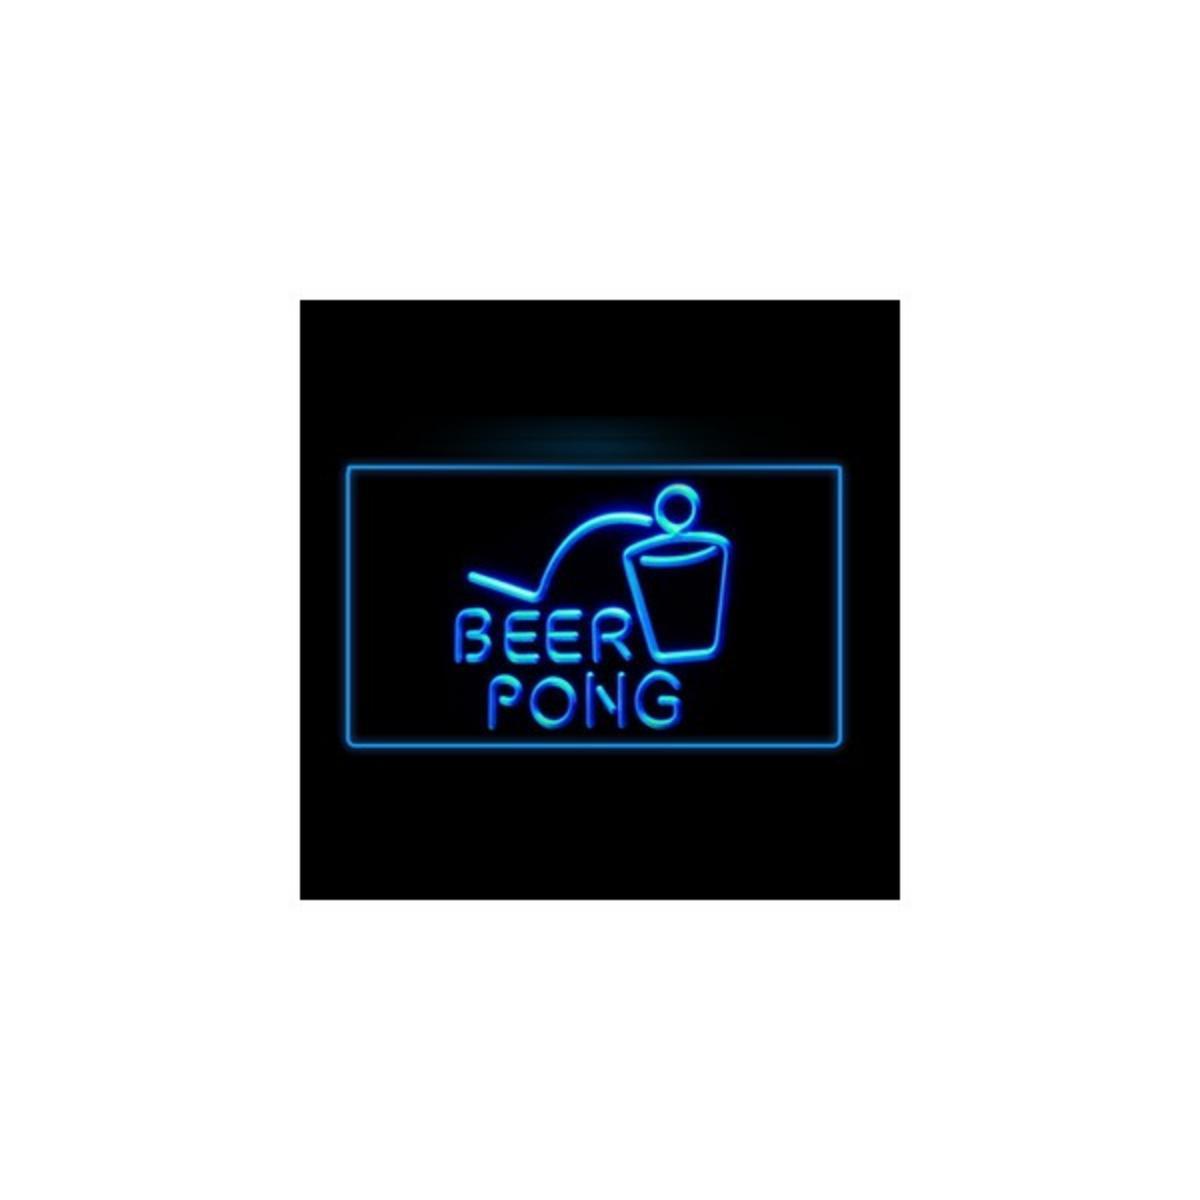 Panneau néon Beer Pong - Verre - Bleu - 30 x 20 cm